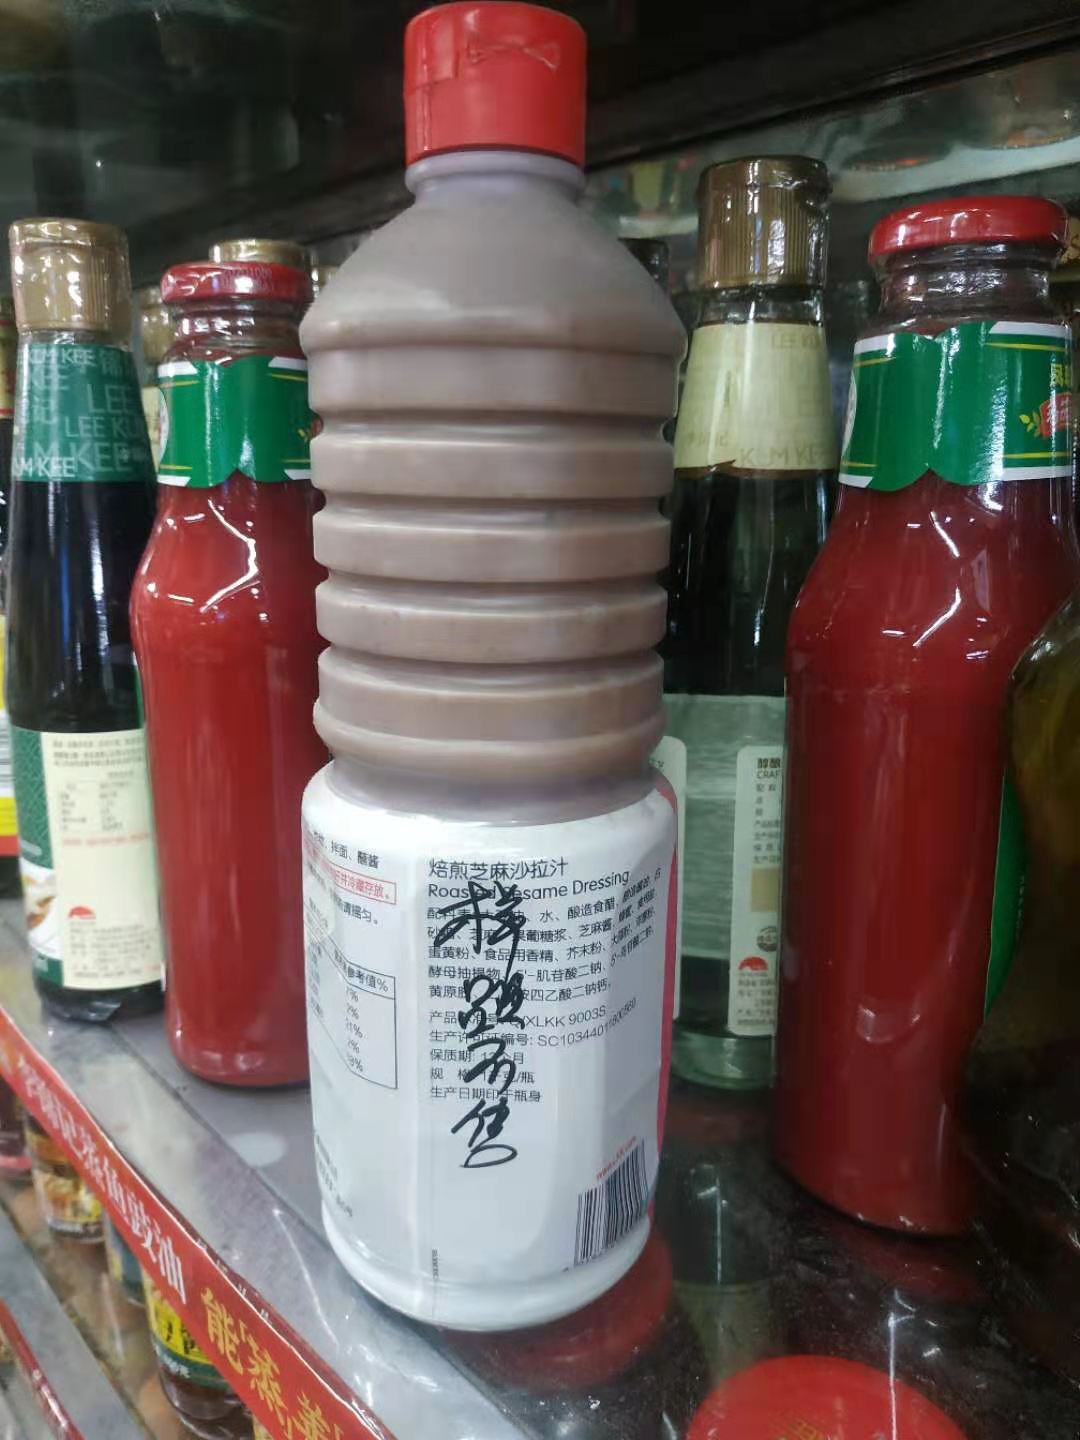 实体批发李锦记培煎芝麻沙拉汁水-1kg连锁供应报价20.00元